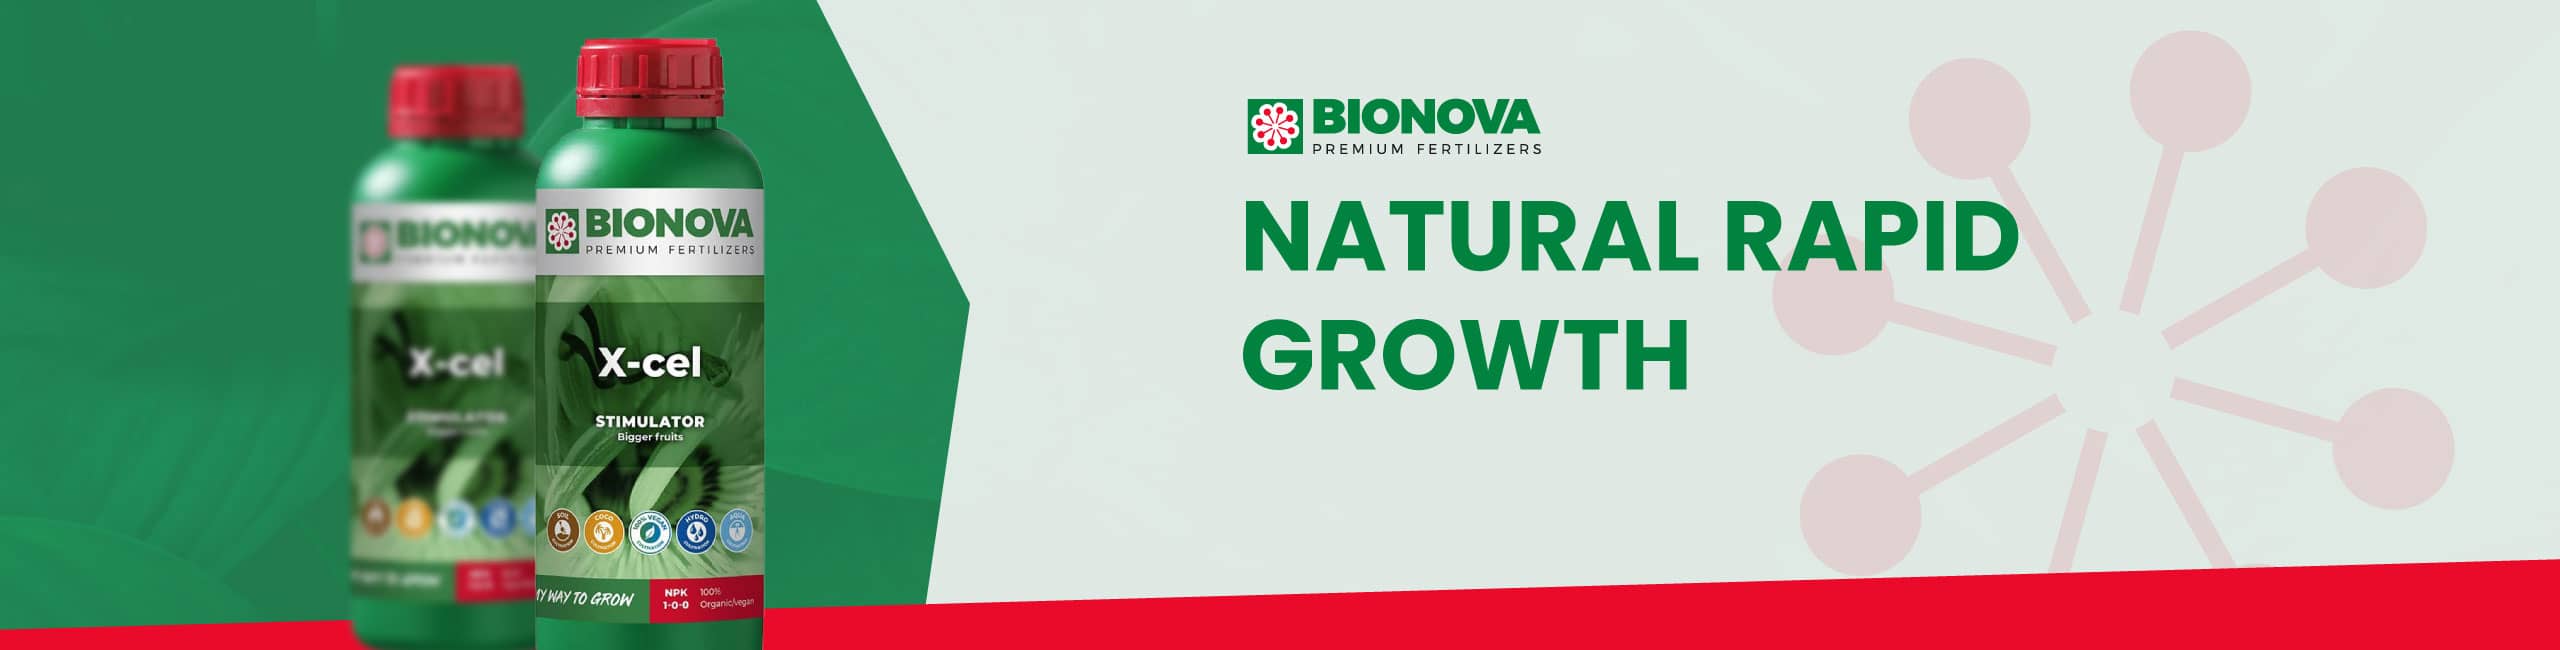 Bionova X-Cel Natural Rapid Growth